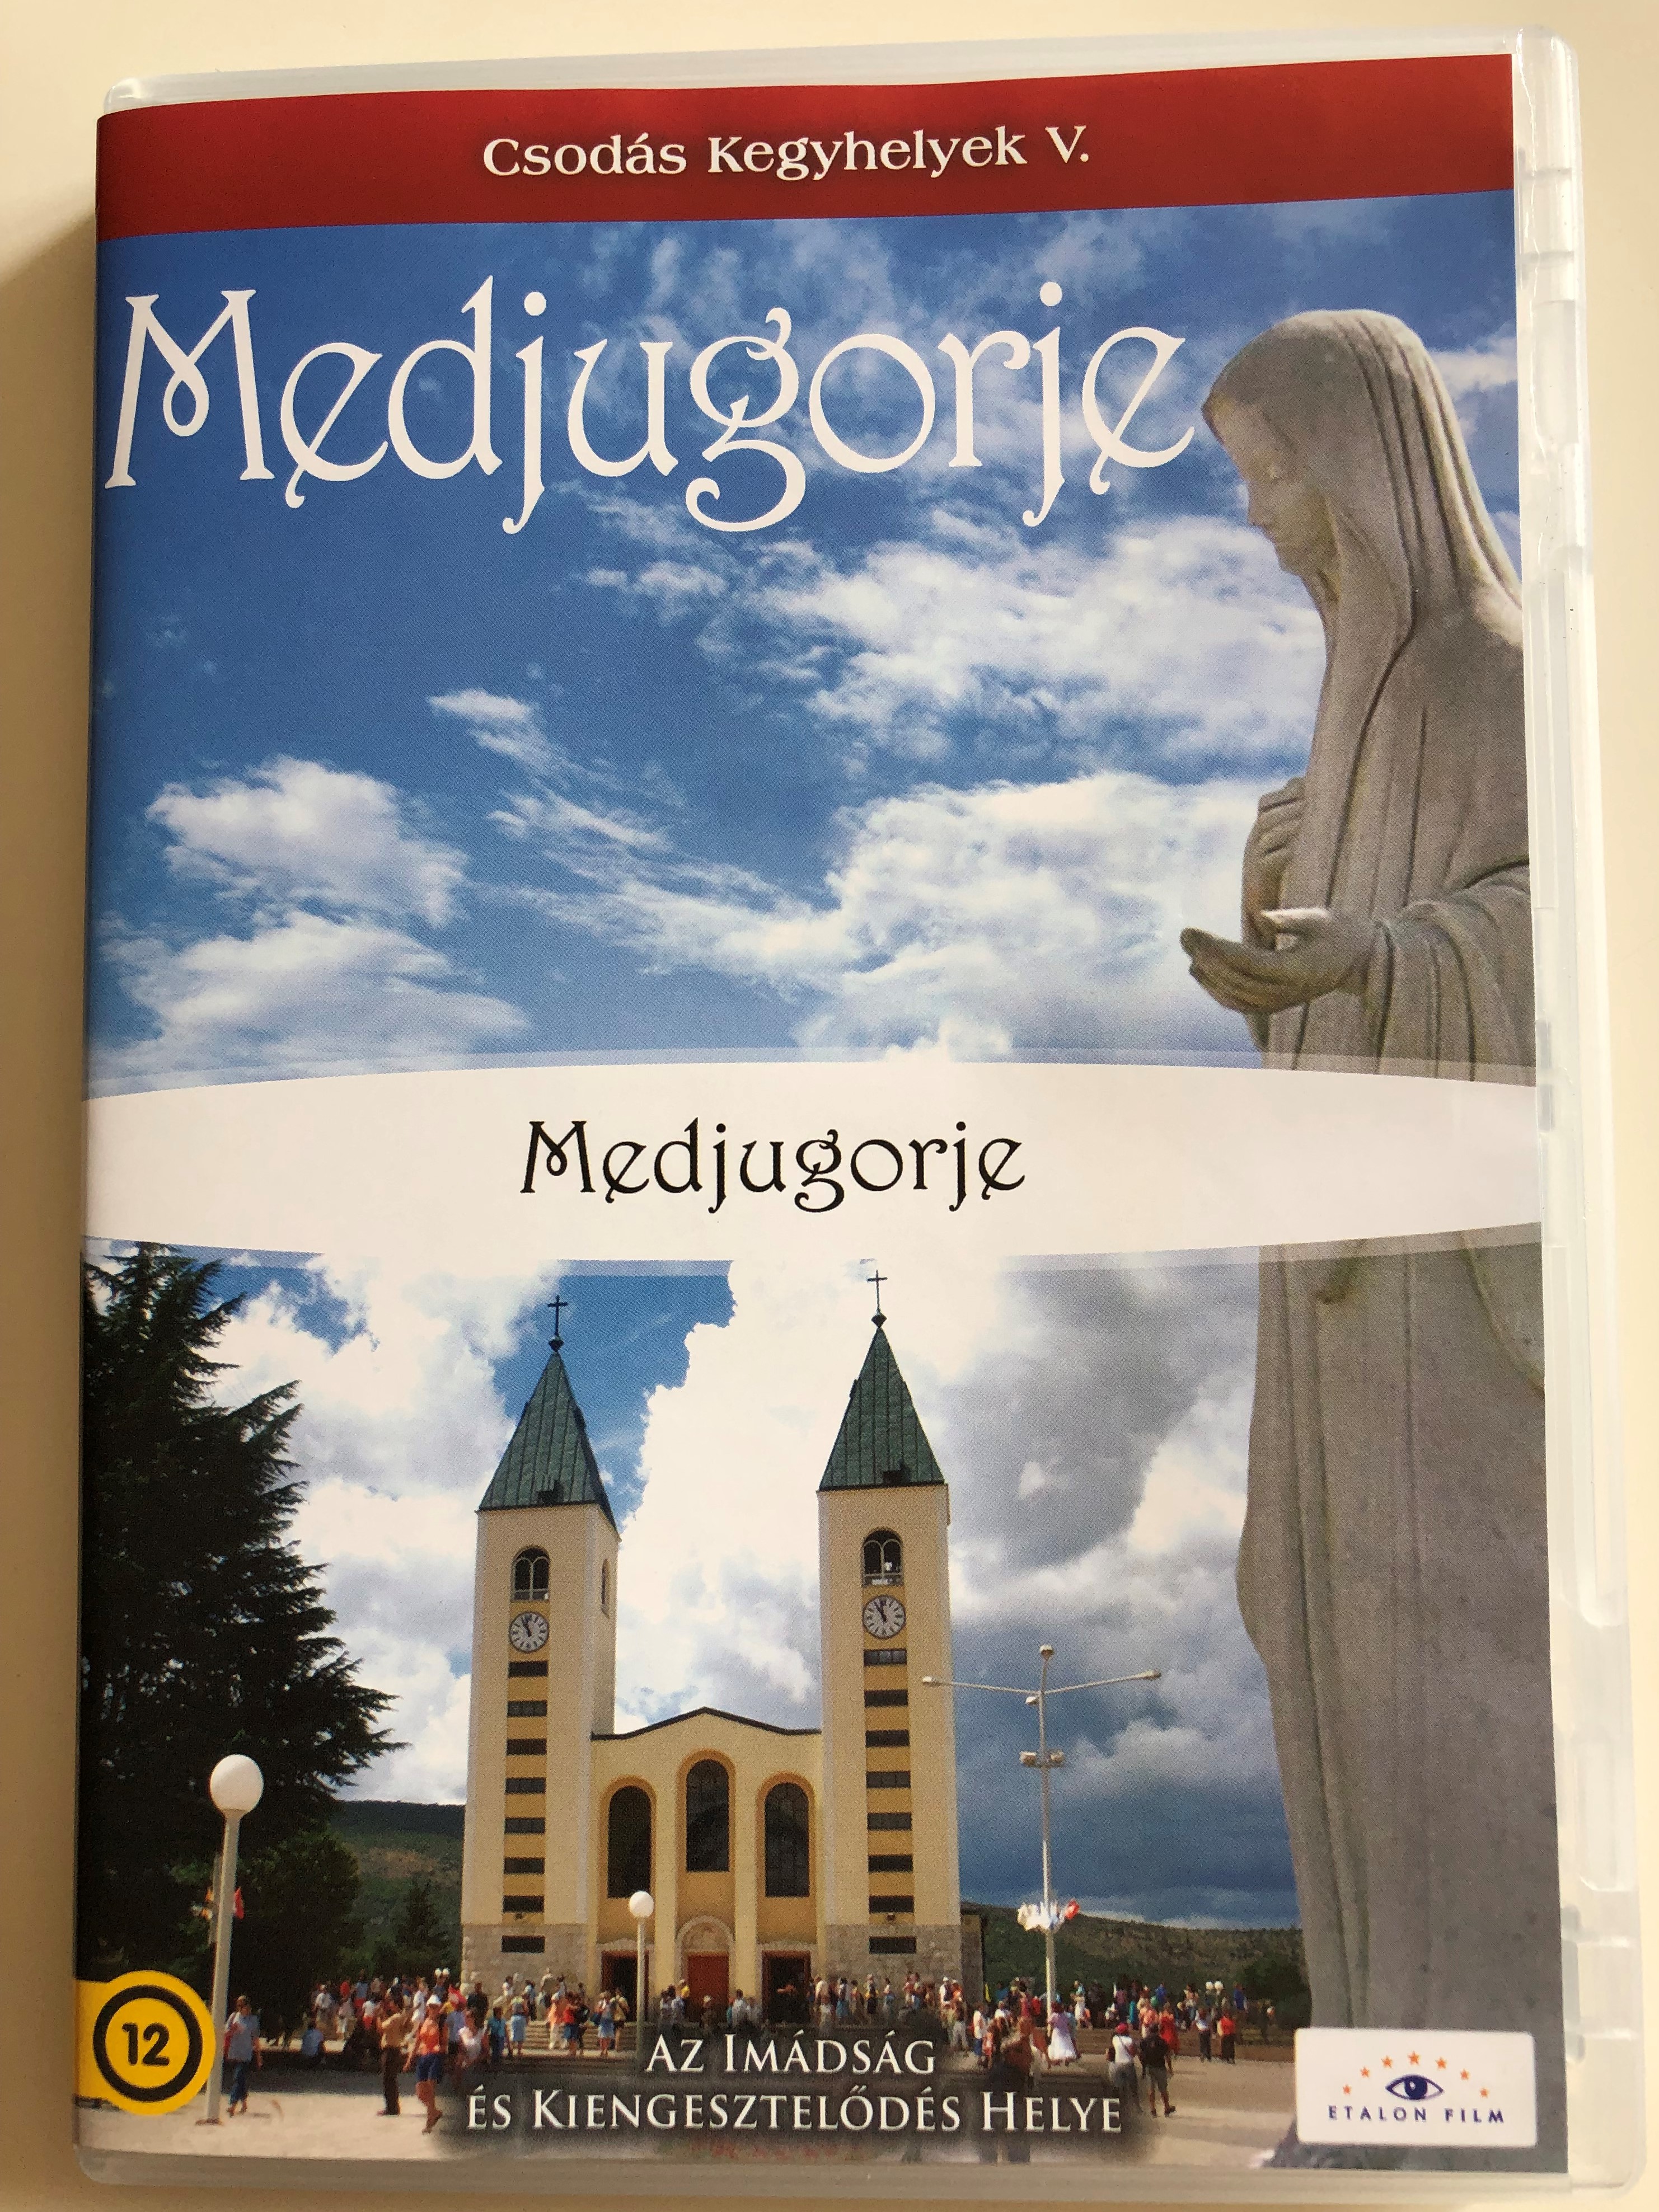 medjugorje-csod-s-kegyhelyek-ii.-dvd-2006-moji-dragi-andjeli-medjugorje-hungarian-documentary-presentation-about-medjugorje-shrine-1-.jpg